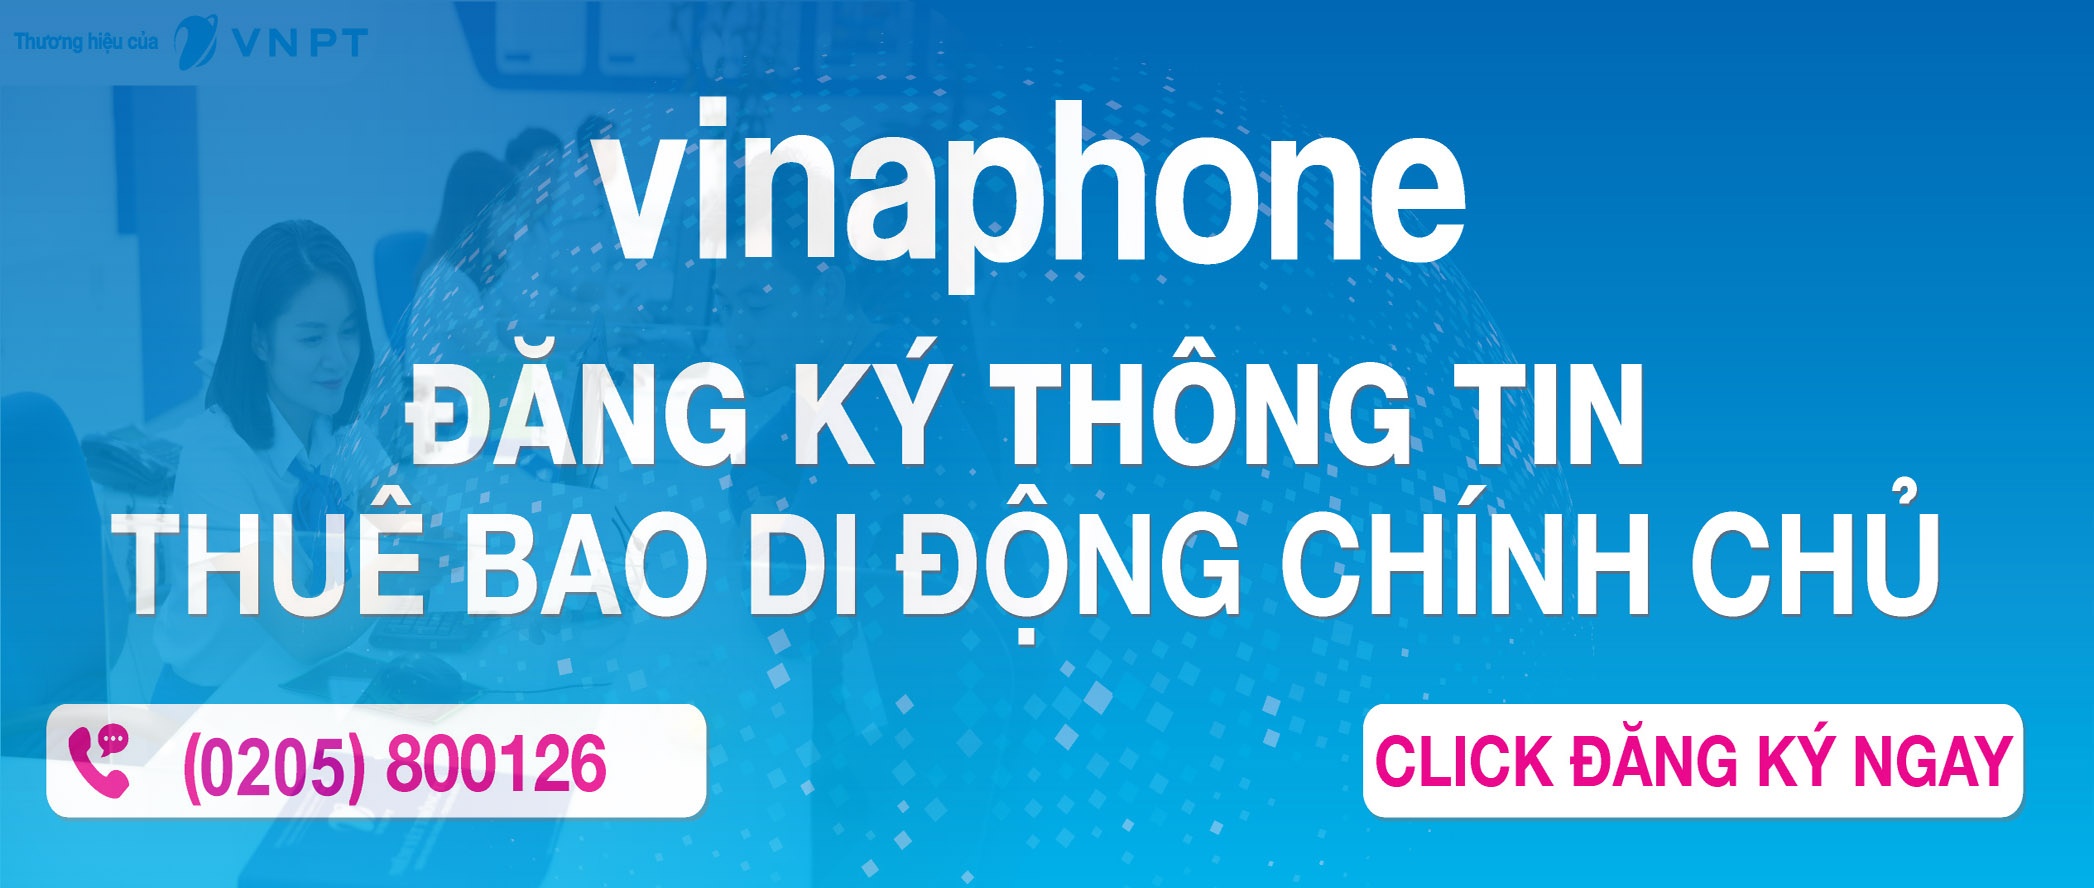 dang-ky-thue-bao-chinh-chu-thue-bao-vinaphone-online-voi-3-buoc-don-gian